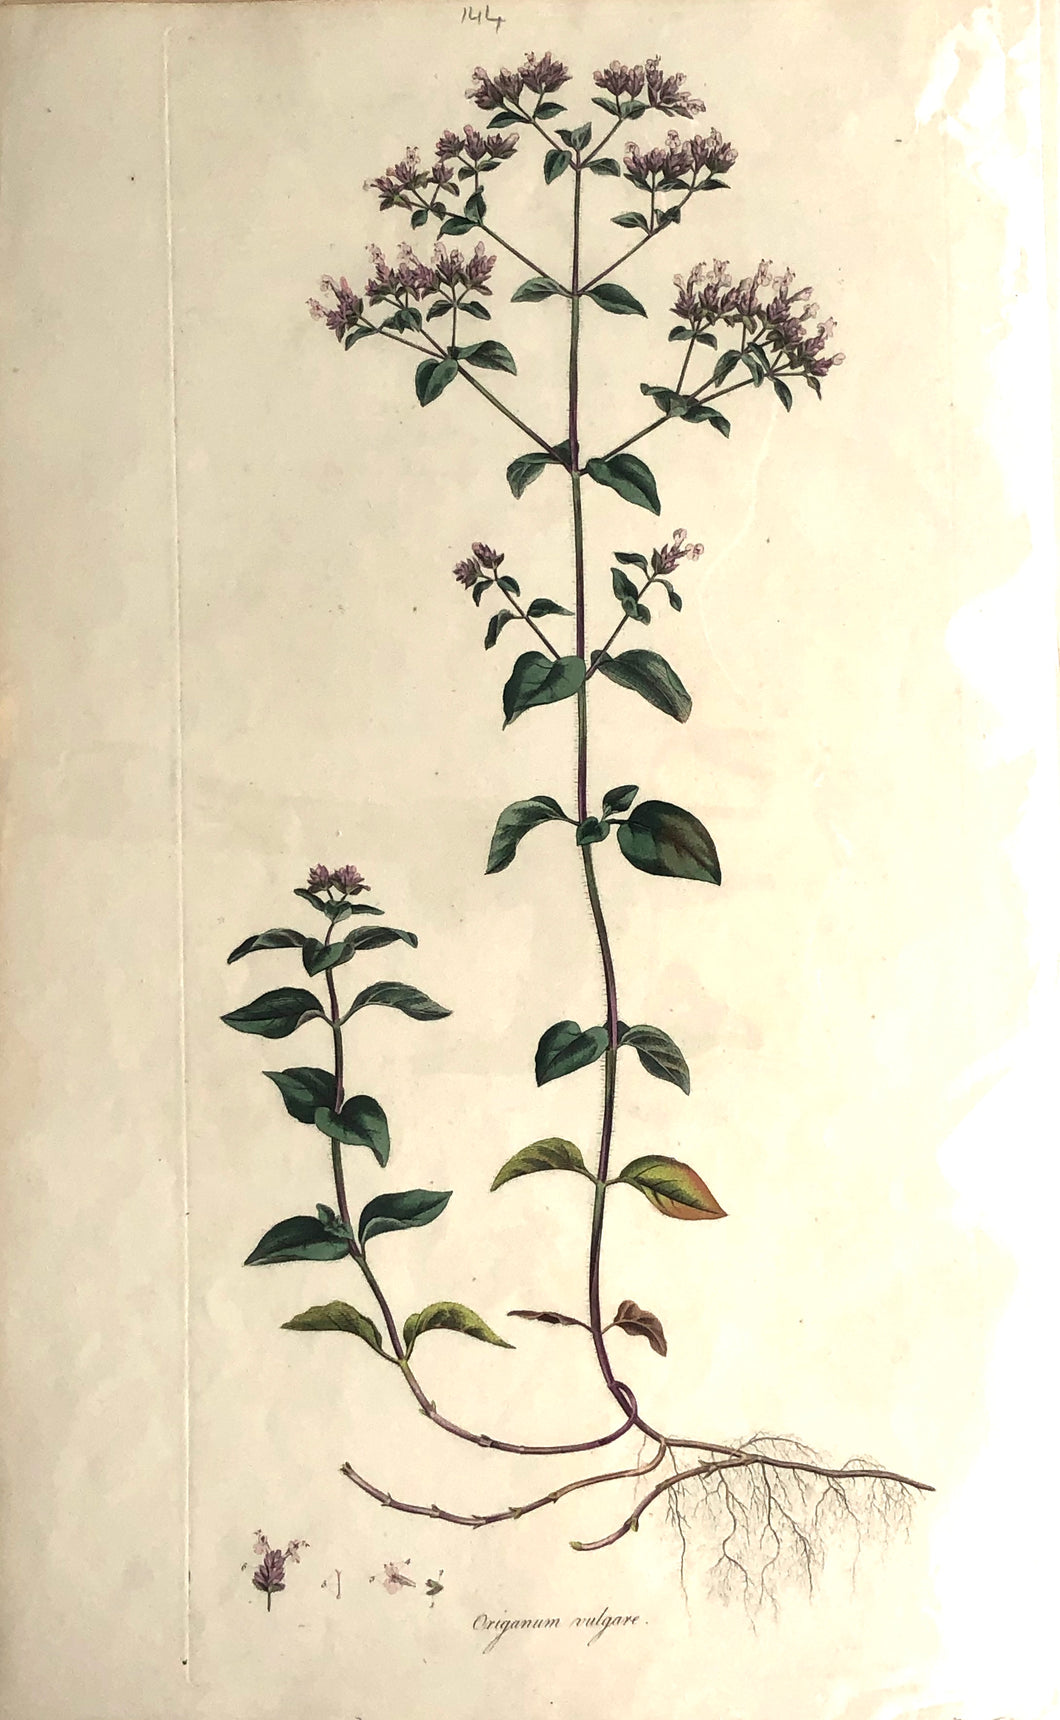 Botanical, Curtis, William, Origanum Vulgare, Flora Londinensis c1817